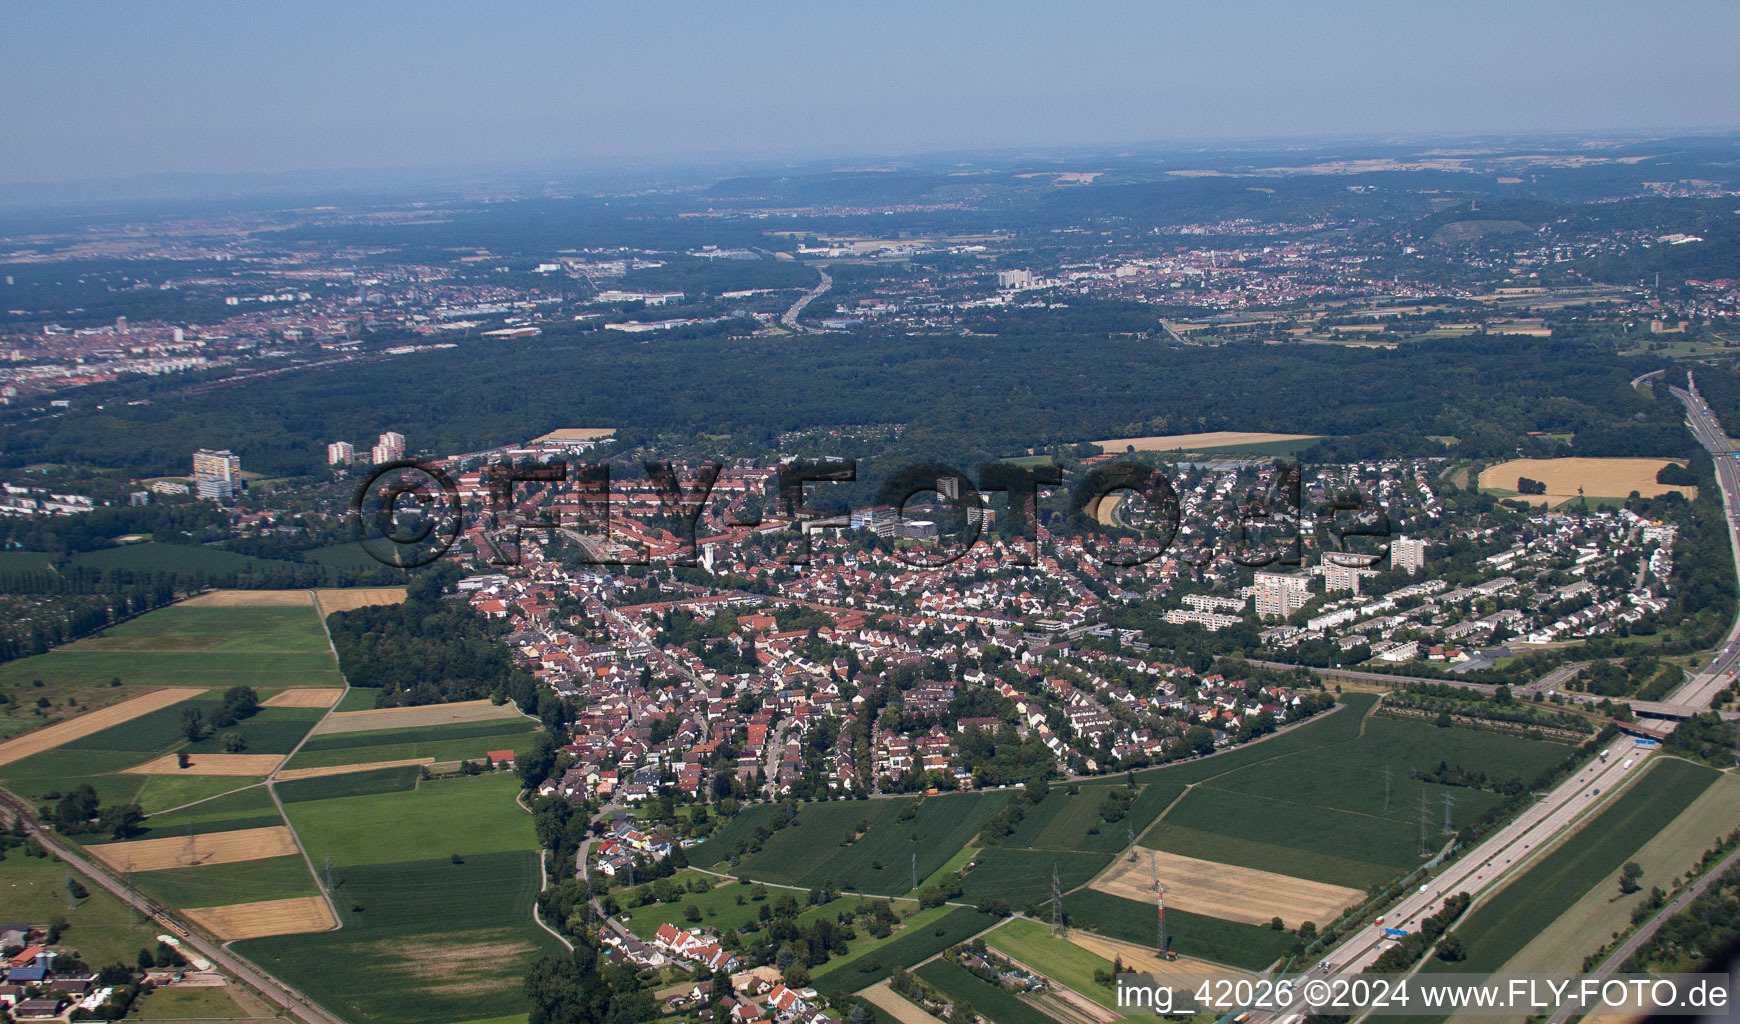 Ortsteil Rüppurr in Karlsruhe im Bundesland Baden-Württemberg, Deutschland aus der Drohnenperspektive